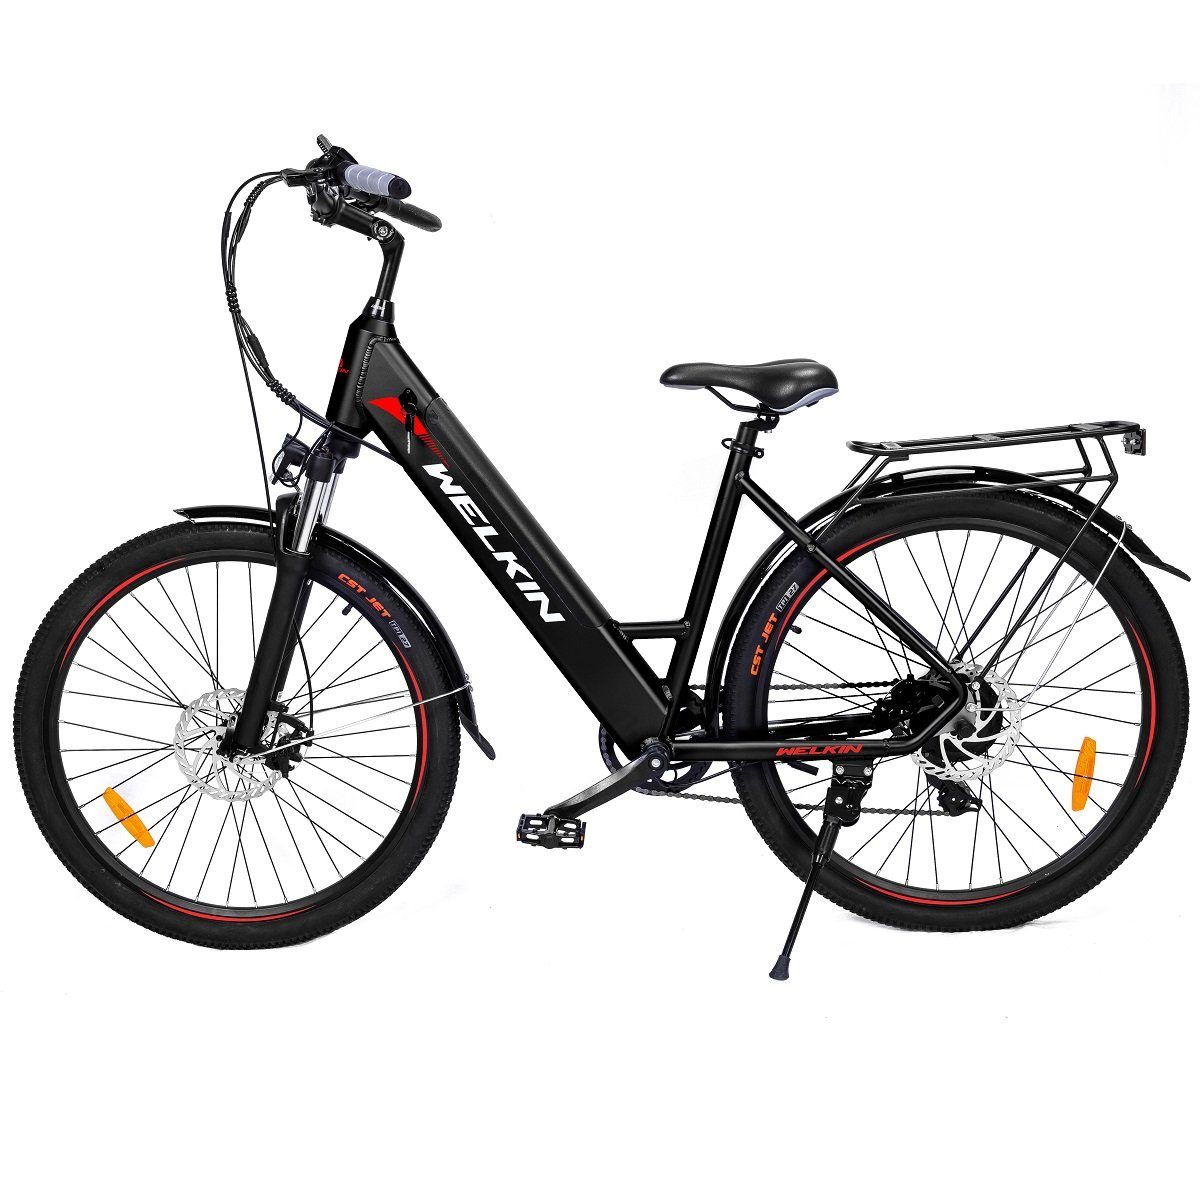 Fangqi E-Bike 27.5zoll Elektrofahrrad, E-bike,Citybike, Shimano 7Gang,36V/10.4AH Akku, Kettenschaltung, (mit Batterieladegerät, mit Heckgepäckträger, mit Beleuchtung), mit Heckgepäckträger Schwarz